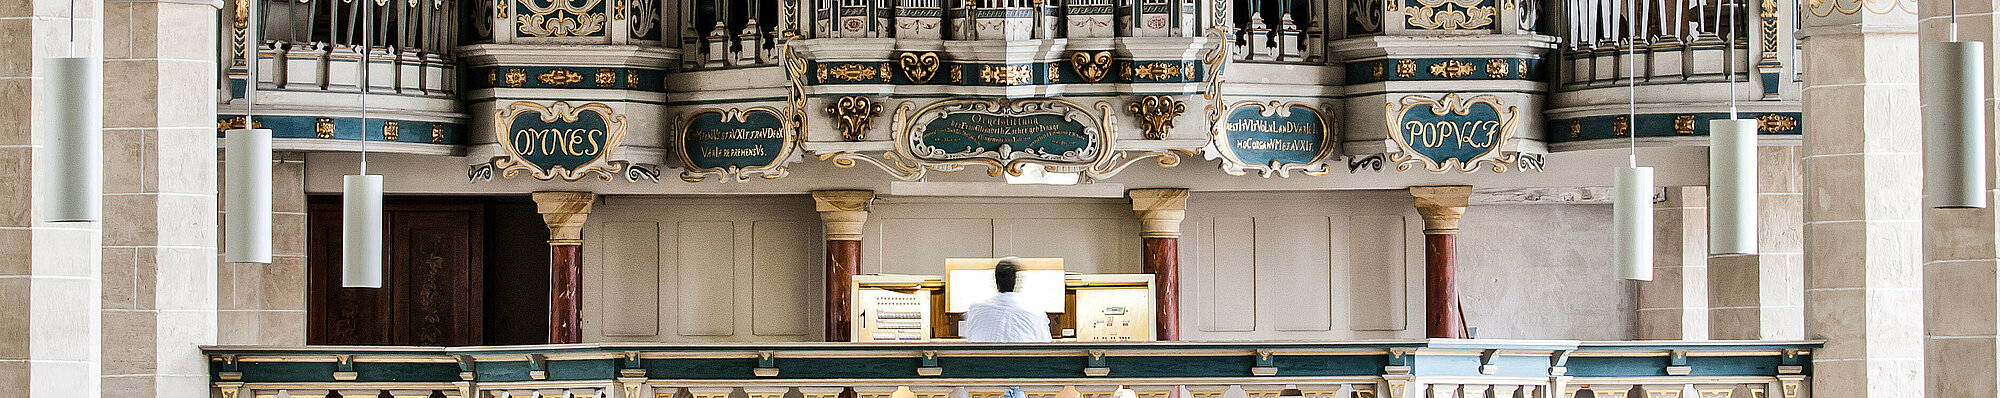 Orgel in der Predigerkirche Erfurt